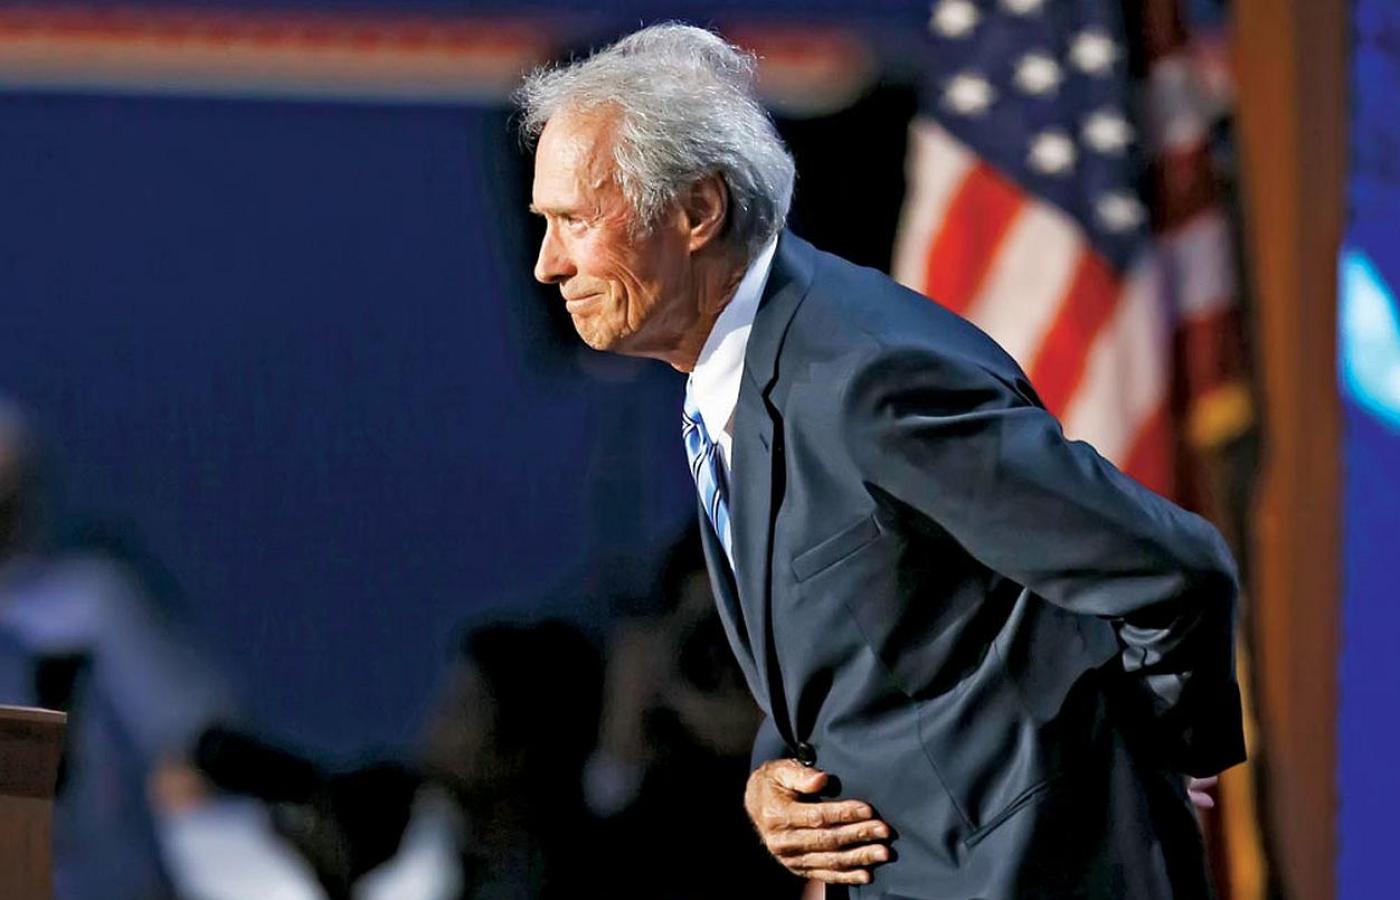 Clint Eastwood w ramach własnego buntu przeciw politycznej poprawności poparł kandydaturę Donalda Trumpa.